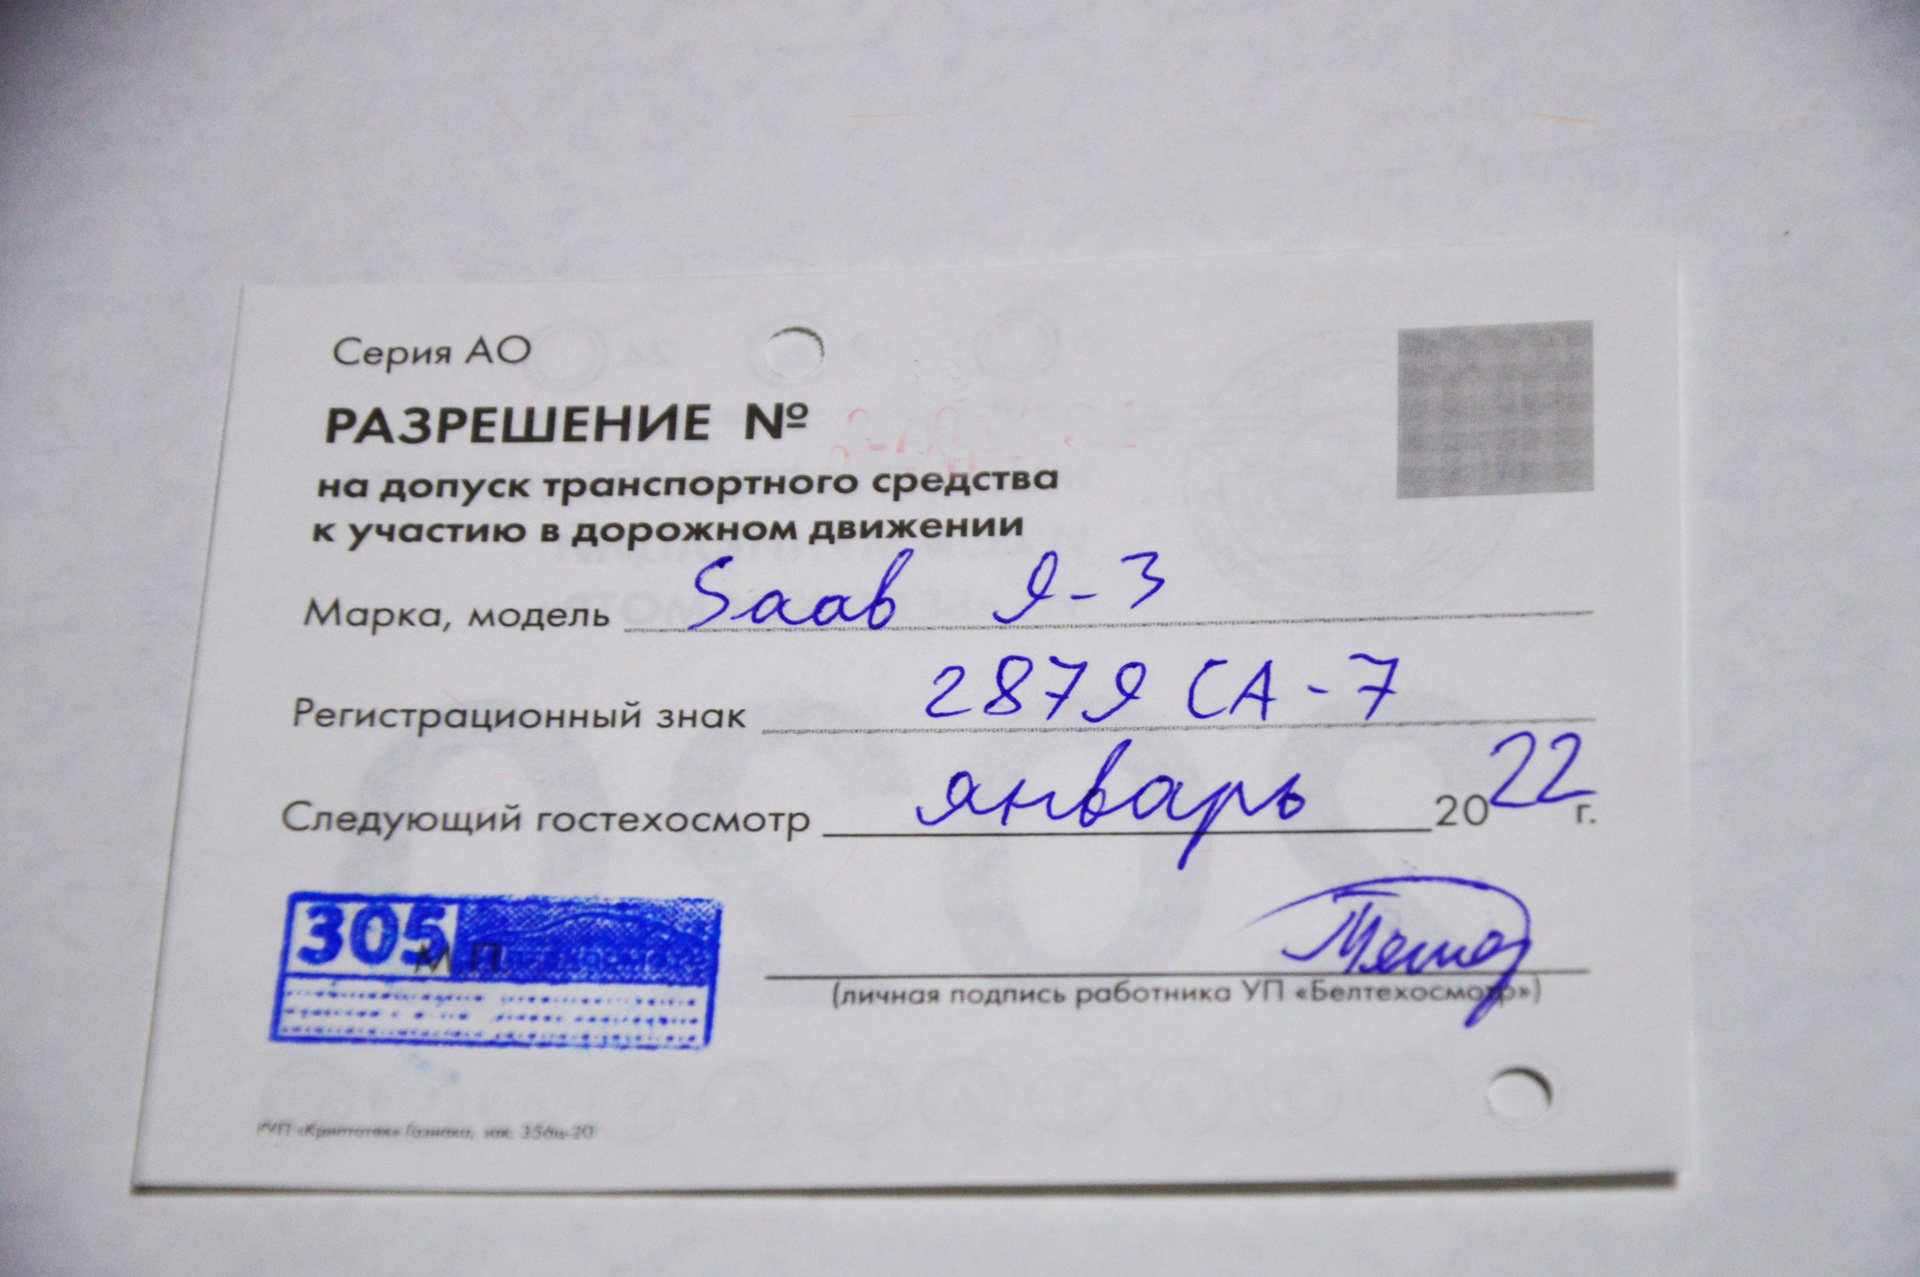 Документы для техосмотра в беларуси. Какие документы нужны для прохождения техосмотра в Беларуси в 2021.